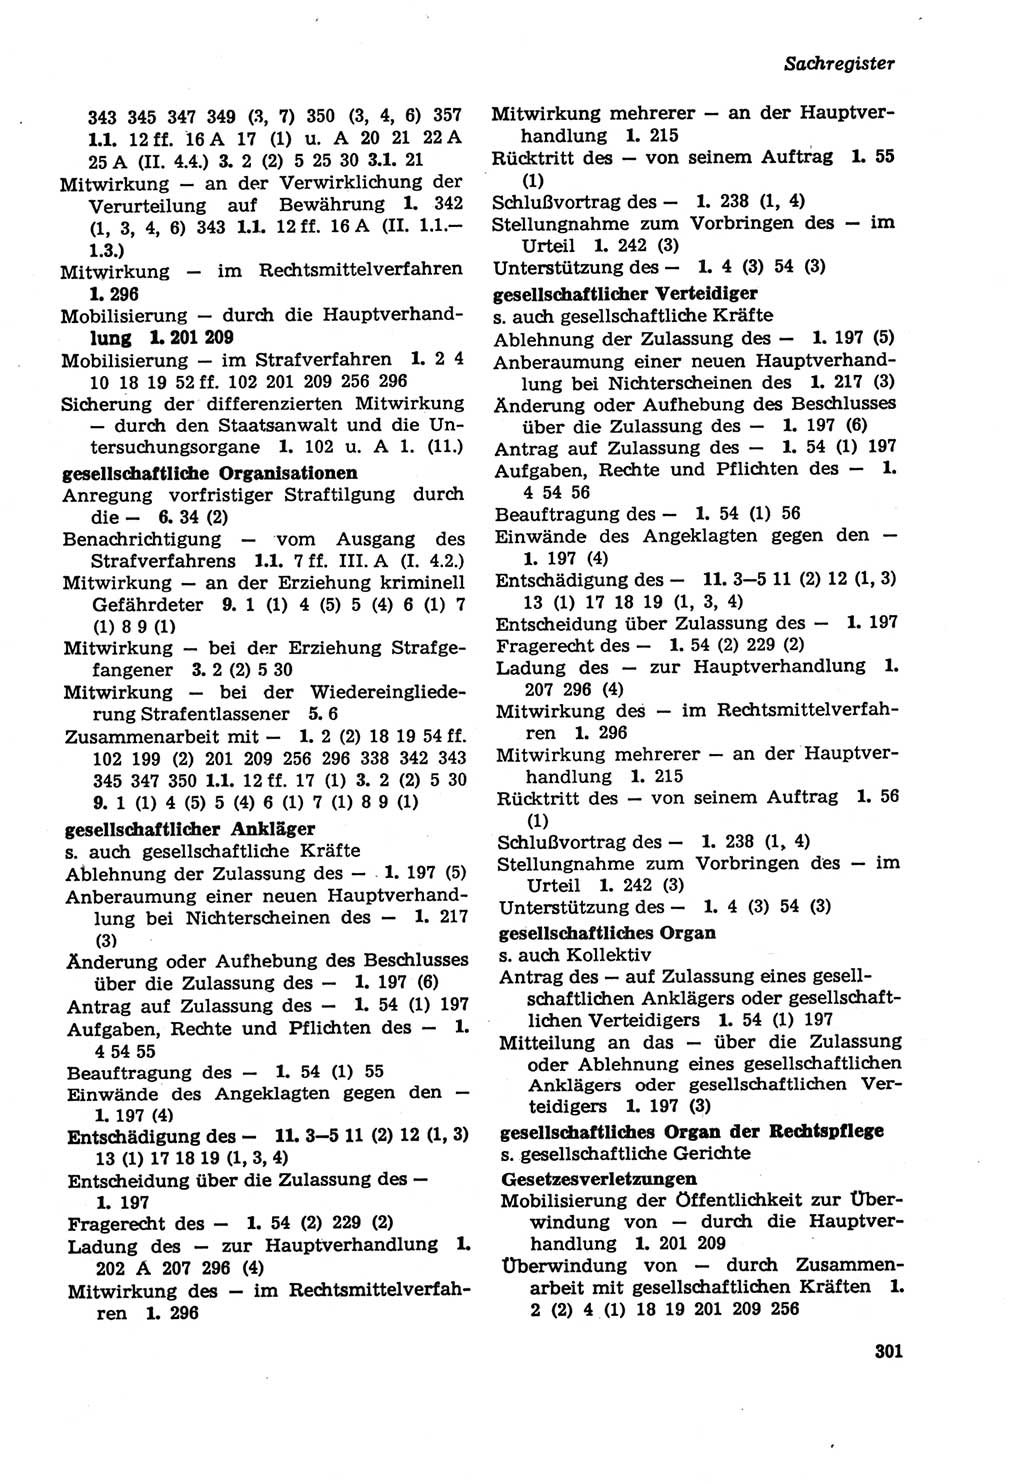 Strafprozeßordnung (StPO) der Deutschen Demokratischen Republik (DDR) sowie angrenzende Gesetze und Bestimmungen 1979, Seite 301 (StPO DDR Ges. Best. 1979, S. 301)